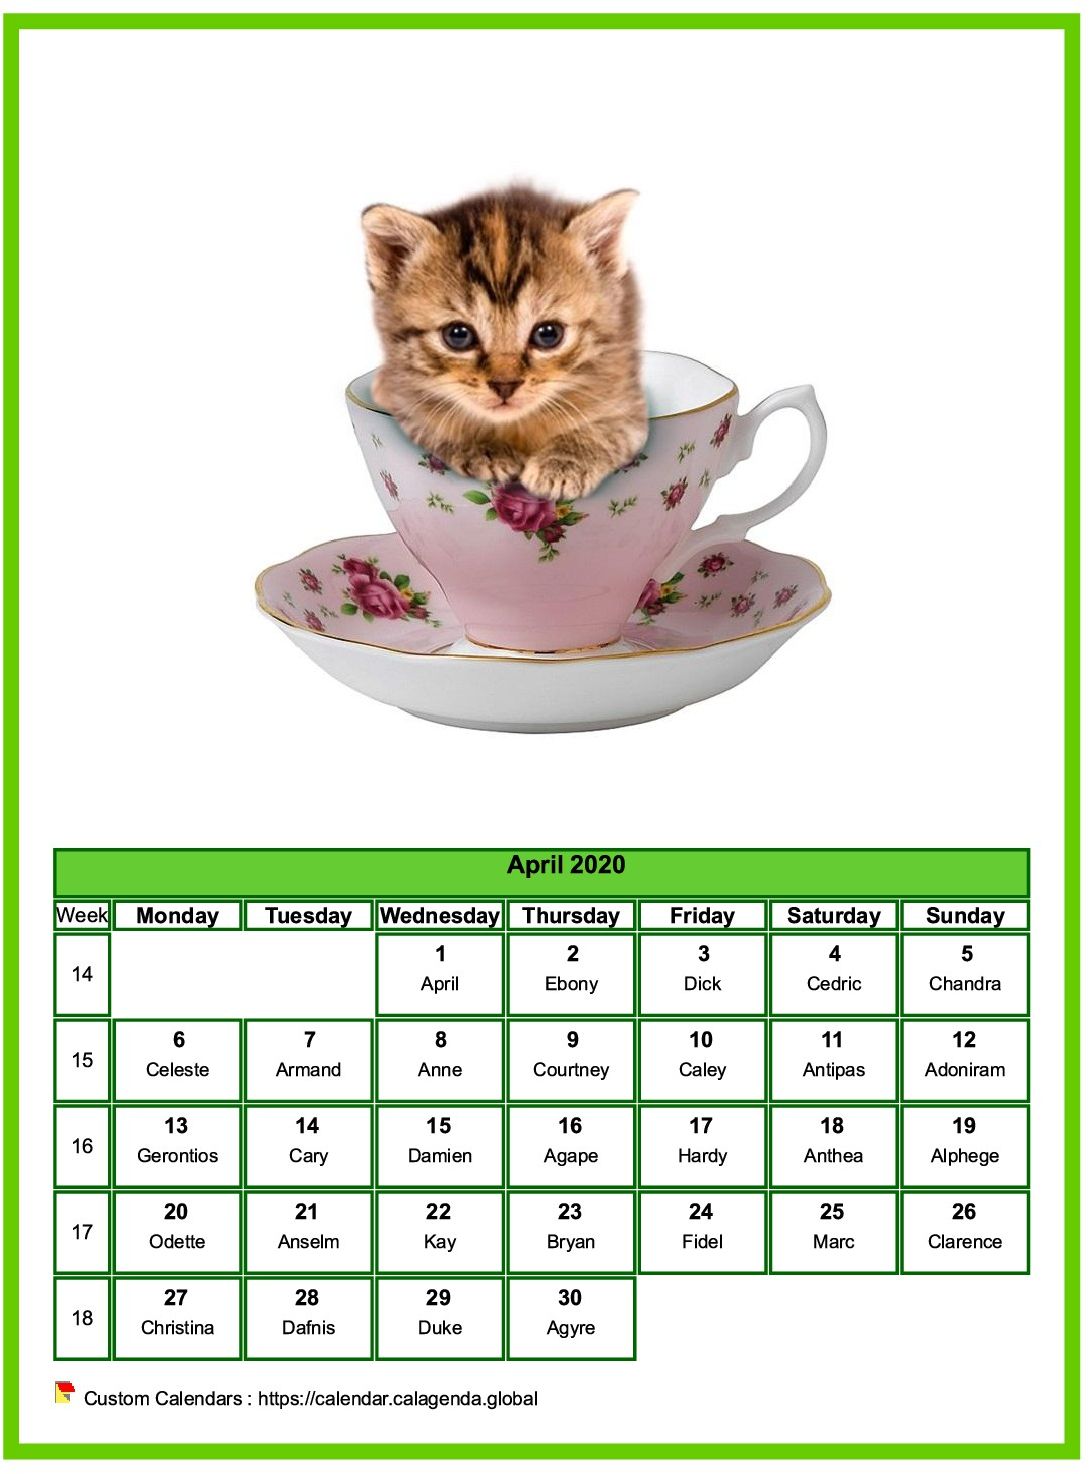 Calendar April 2020 cats